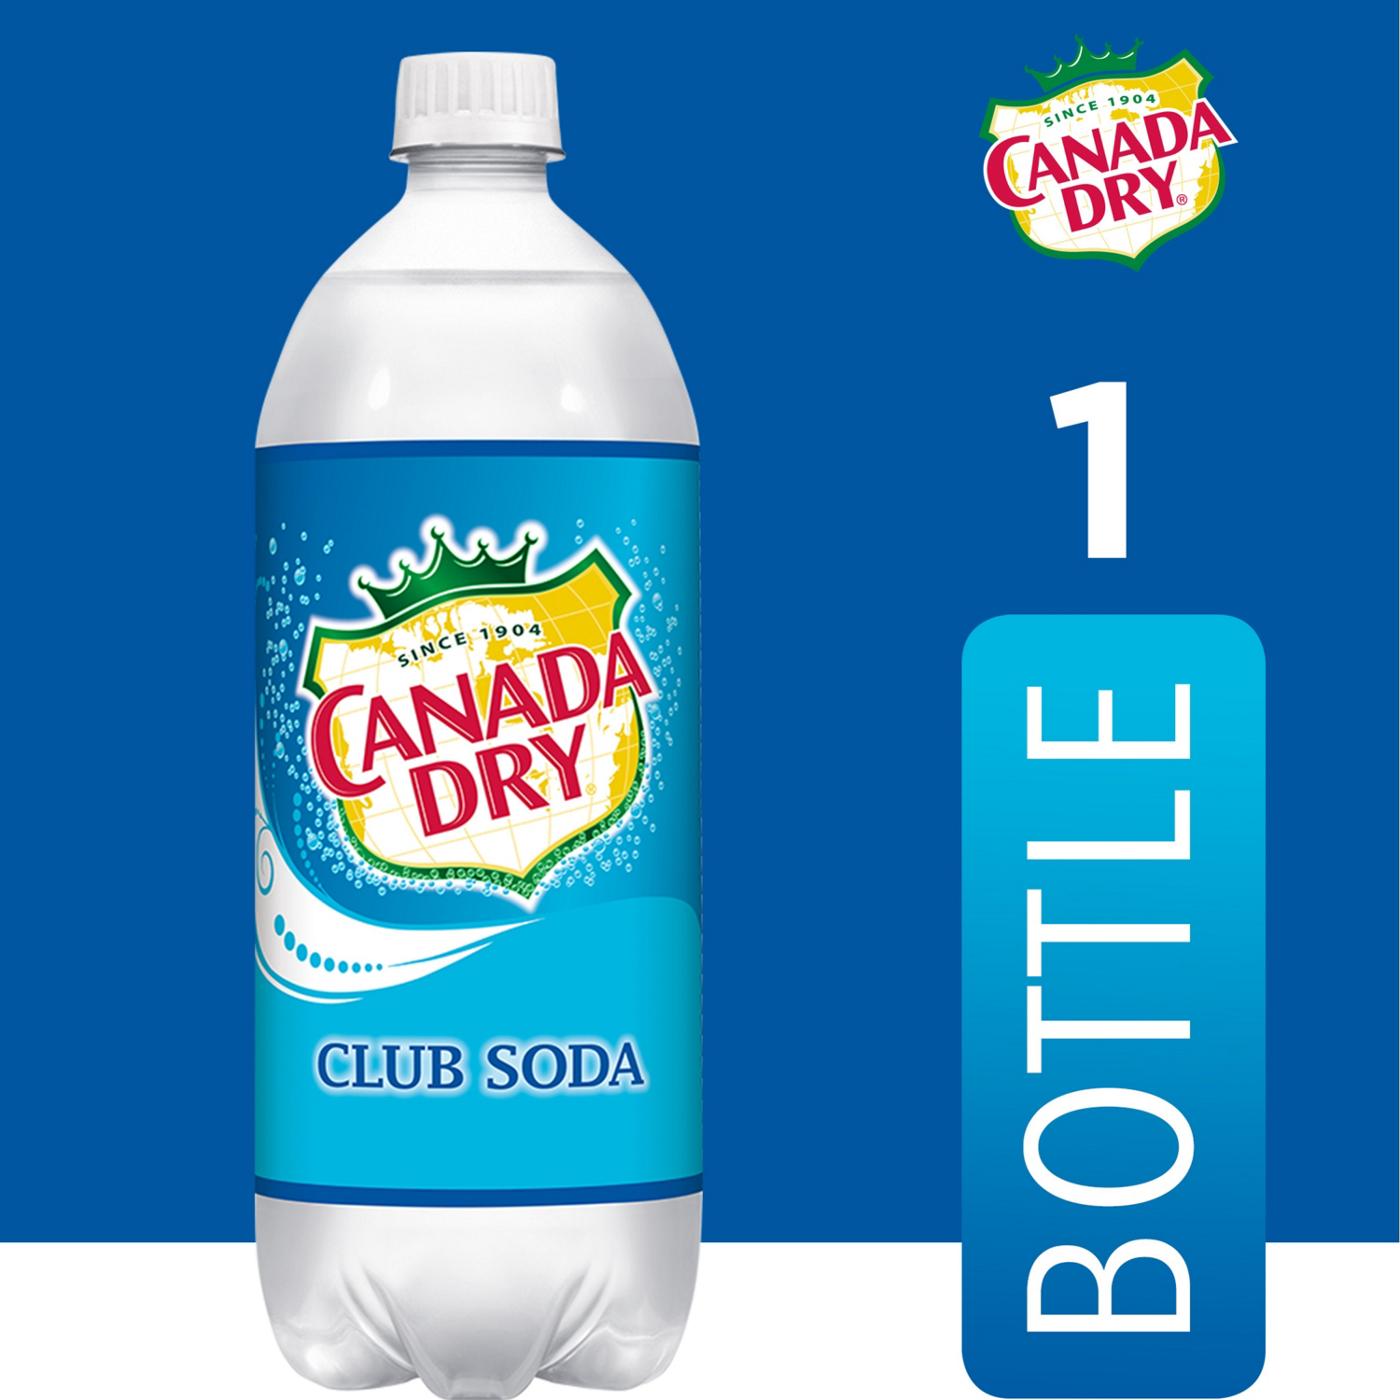 Canada Dry Club Soda; image 2 of 2